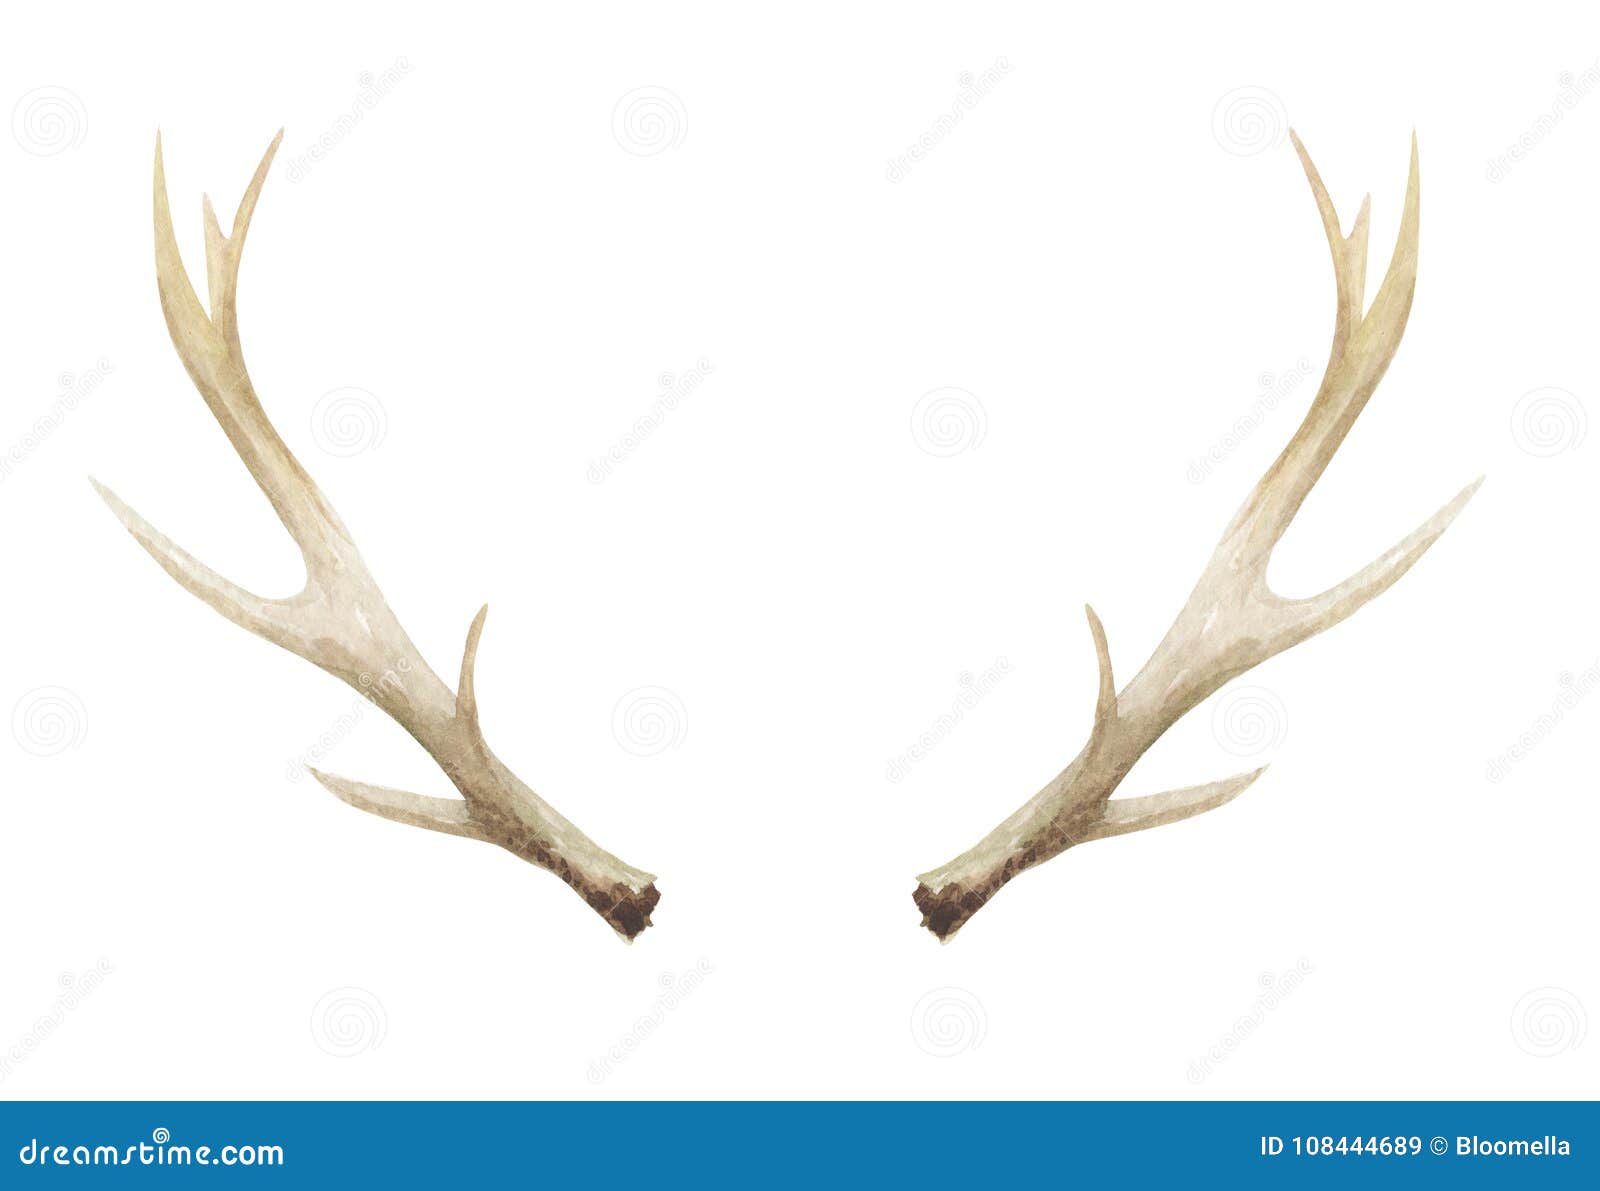 watercolor antlers deer stag horns bone painted